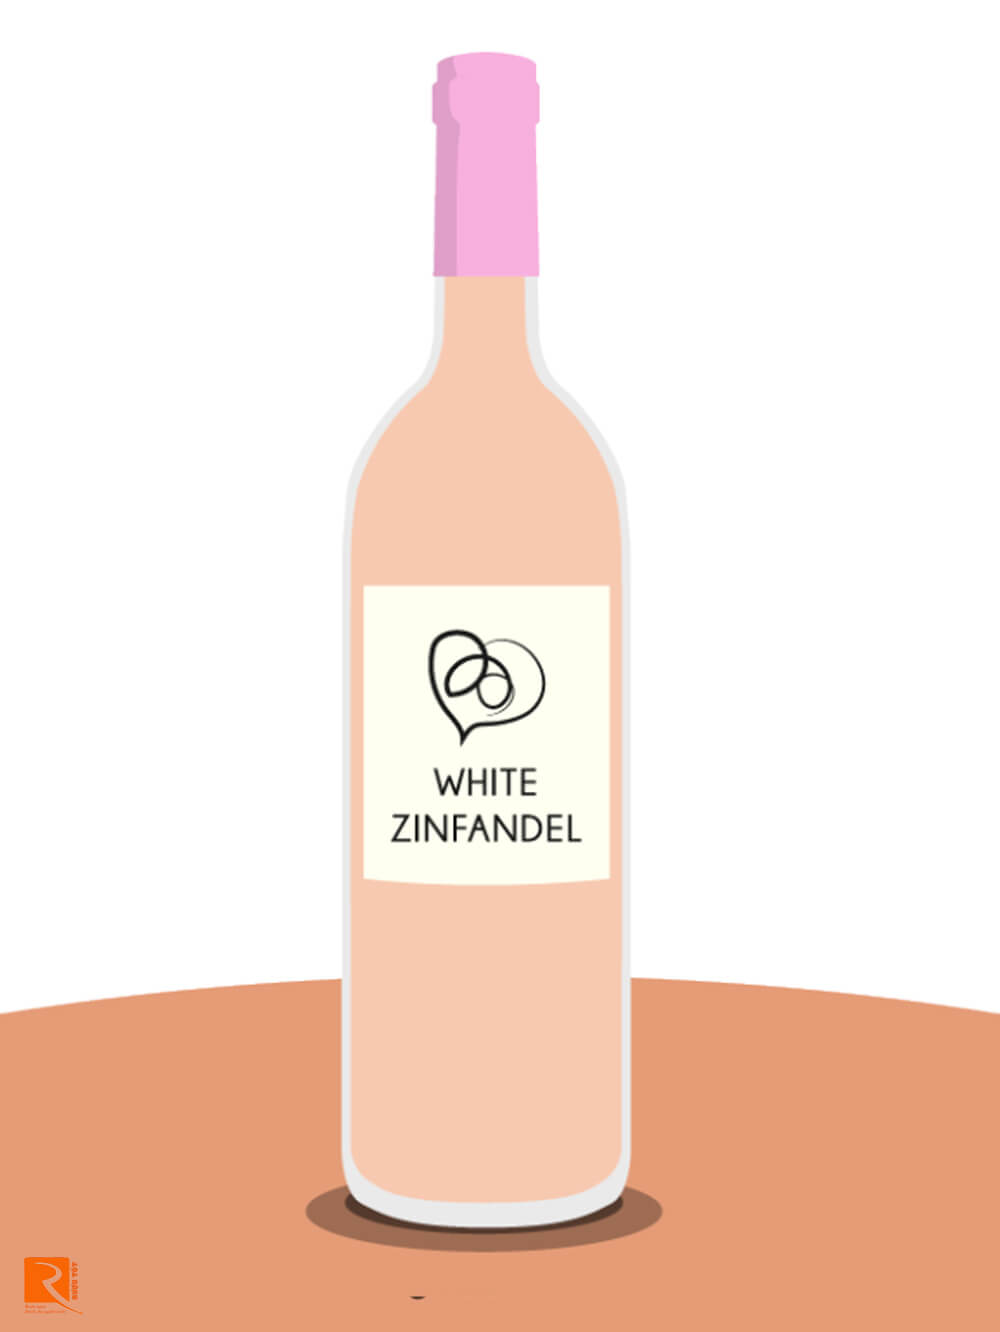 Nếu bạn yêu thích White Zinfandel